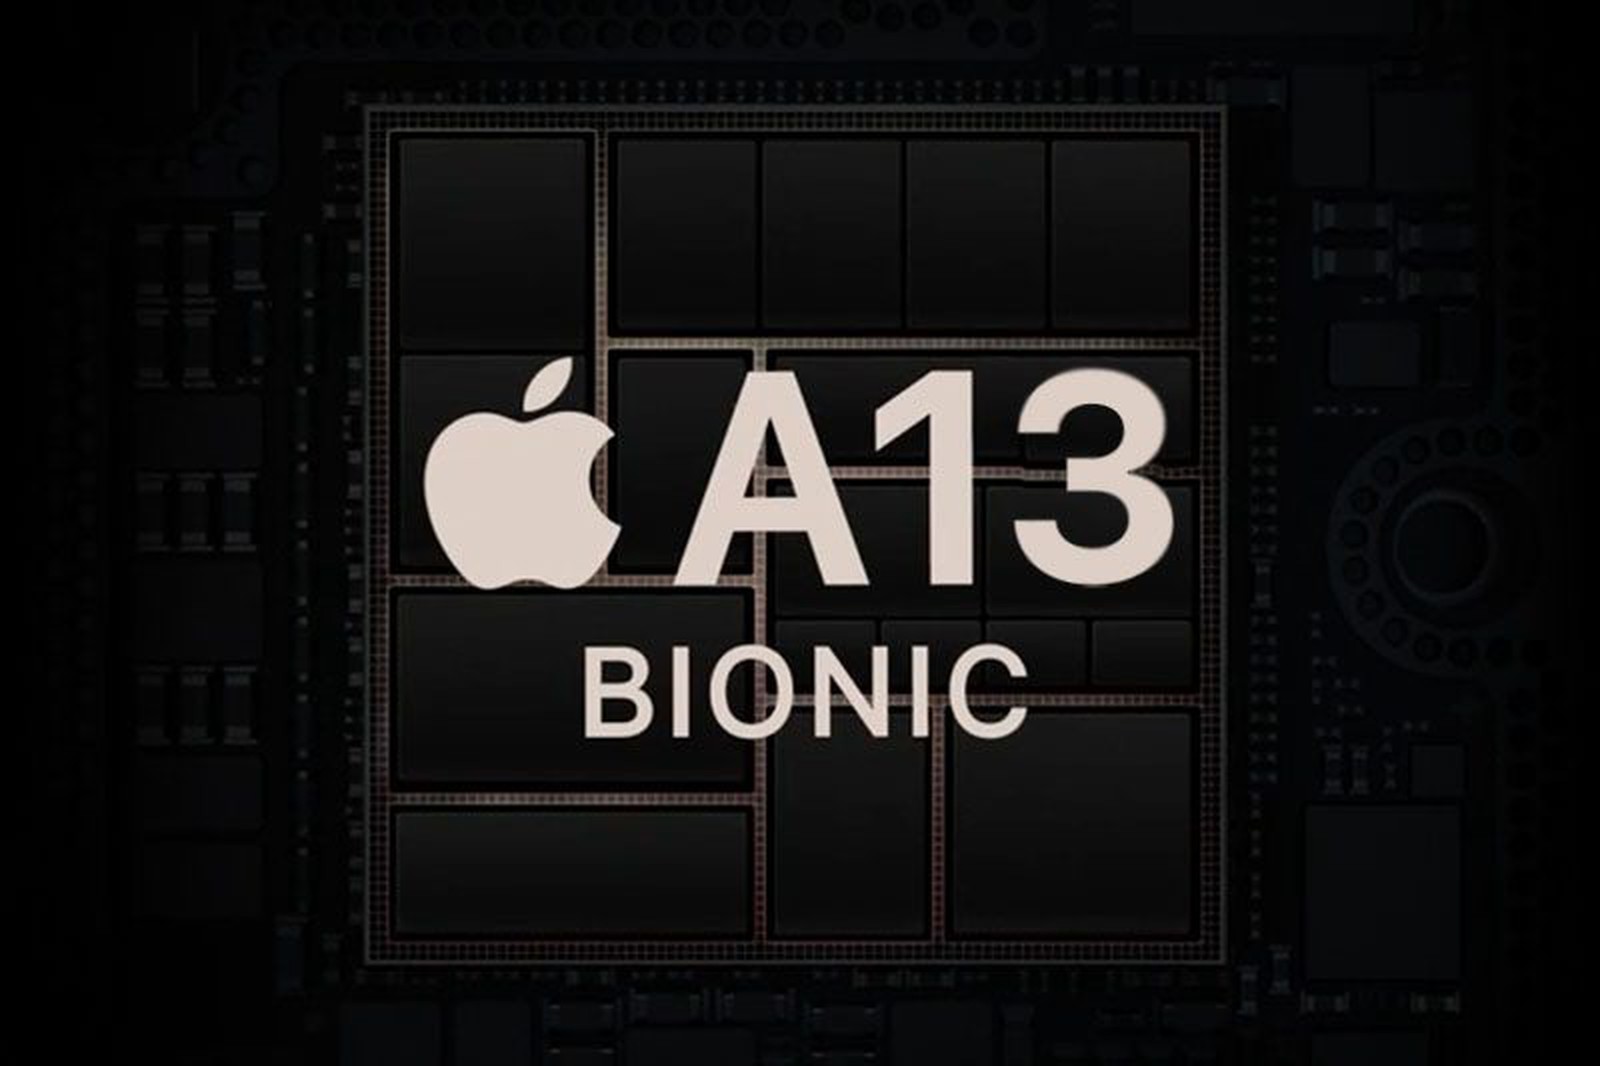 A13 Bionic